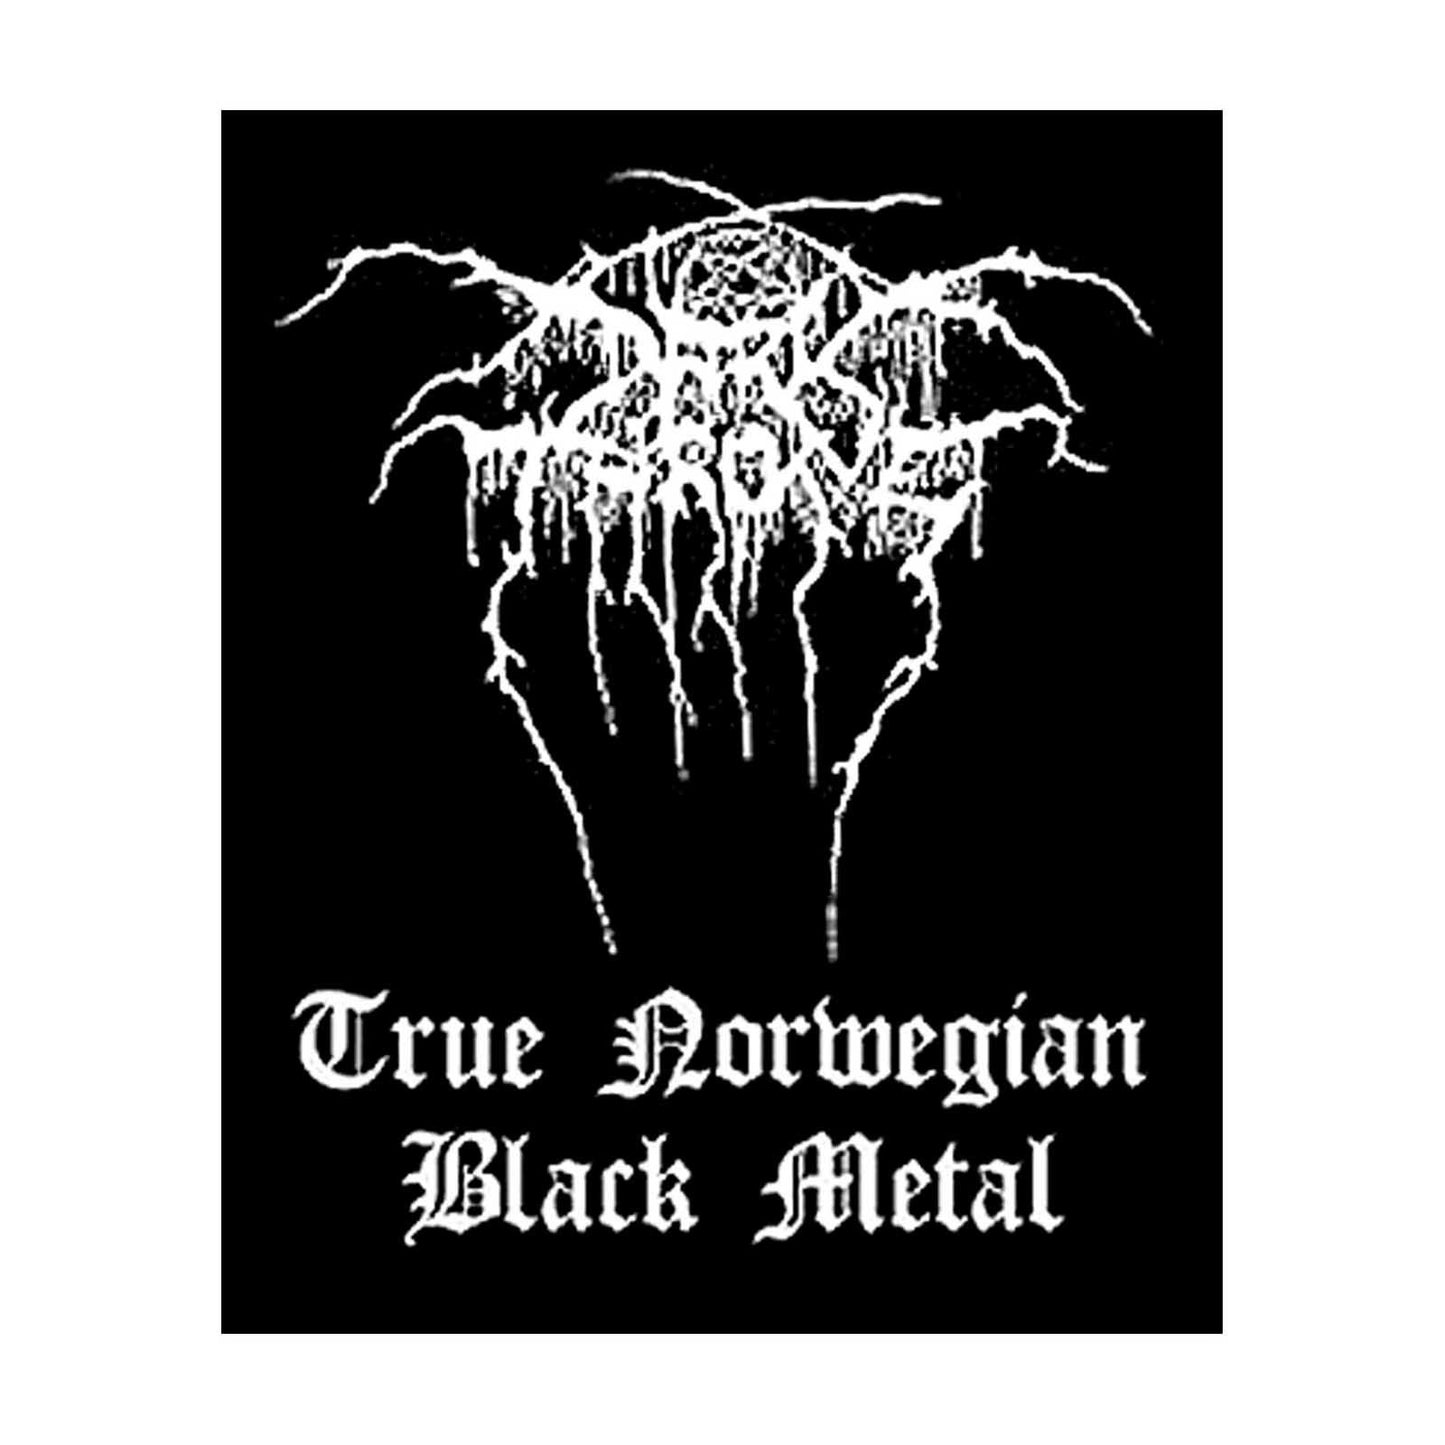 Darkthrone Standard Patch: Black Metal (Loose)